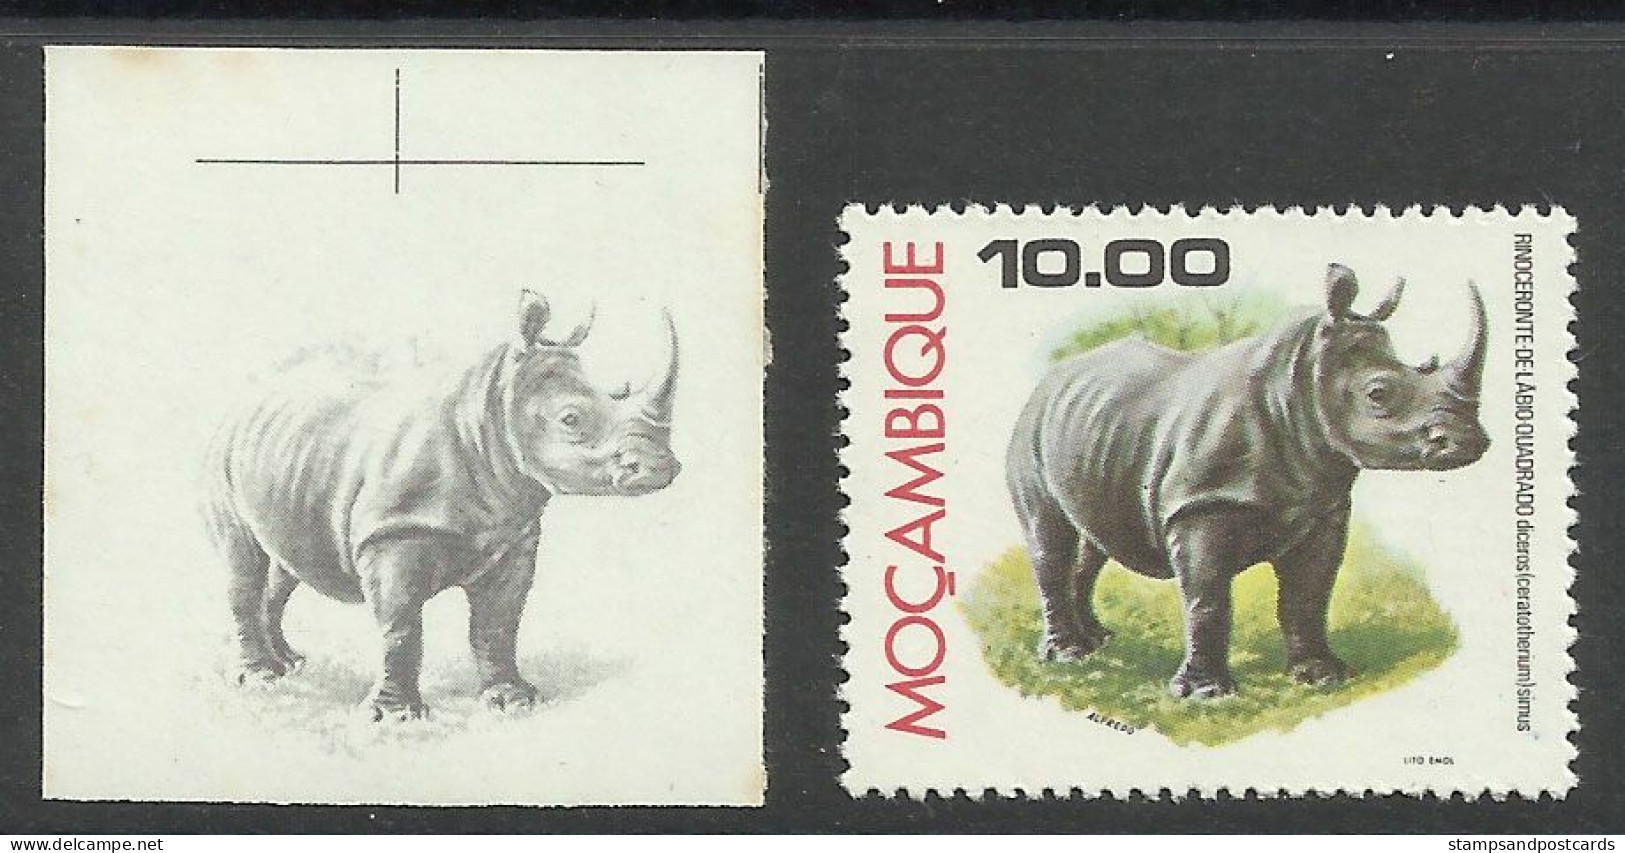 Mozambique 1976 Preuve De Couleur Rhinocéros Moçambique 1976 Color Proof Rhino Rhinocerus - Rhinoceros